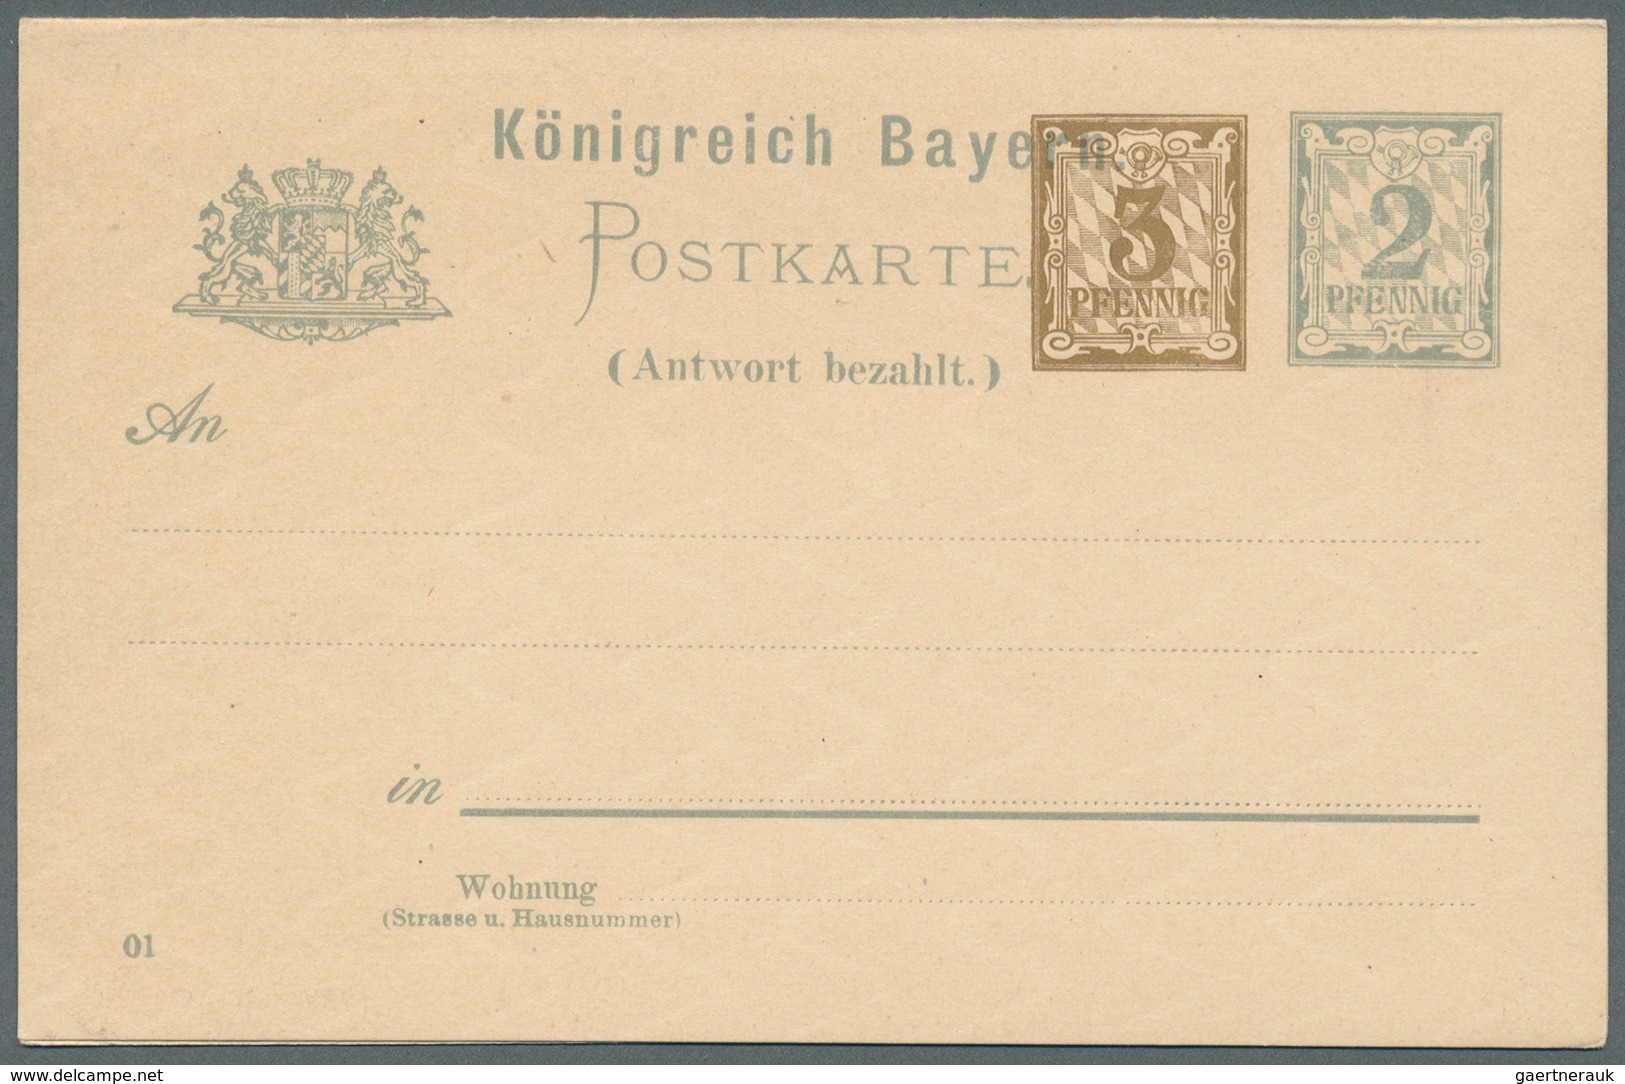 Bayern - Ganzsachen: 1869/1920, große Sammlung von insgesamt 608 nur versch. Ganzsachen mit Postkart